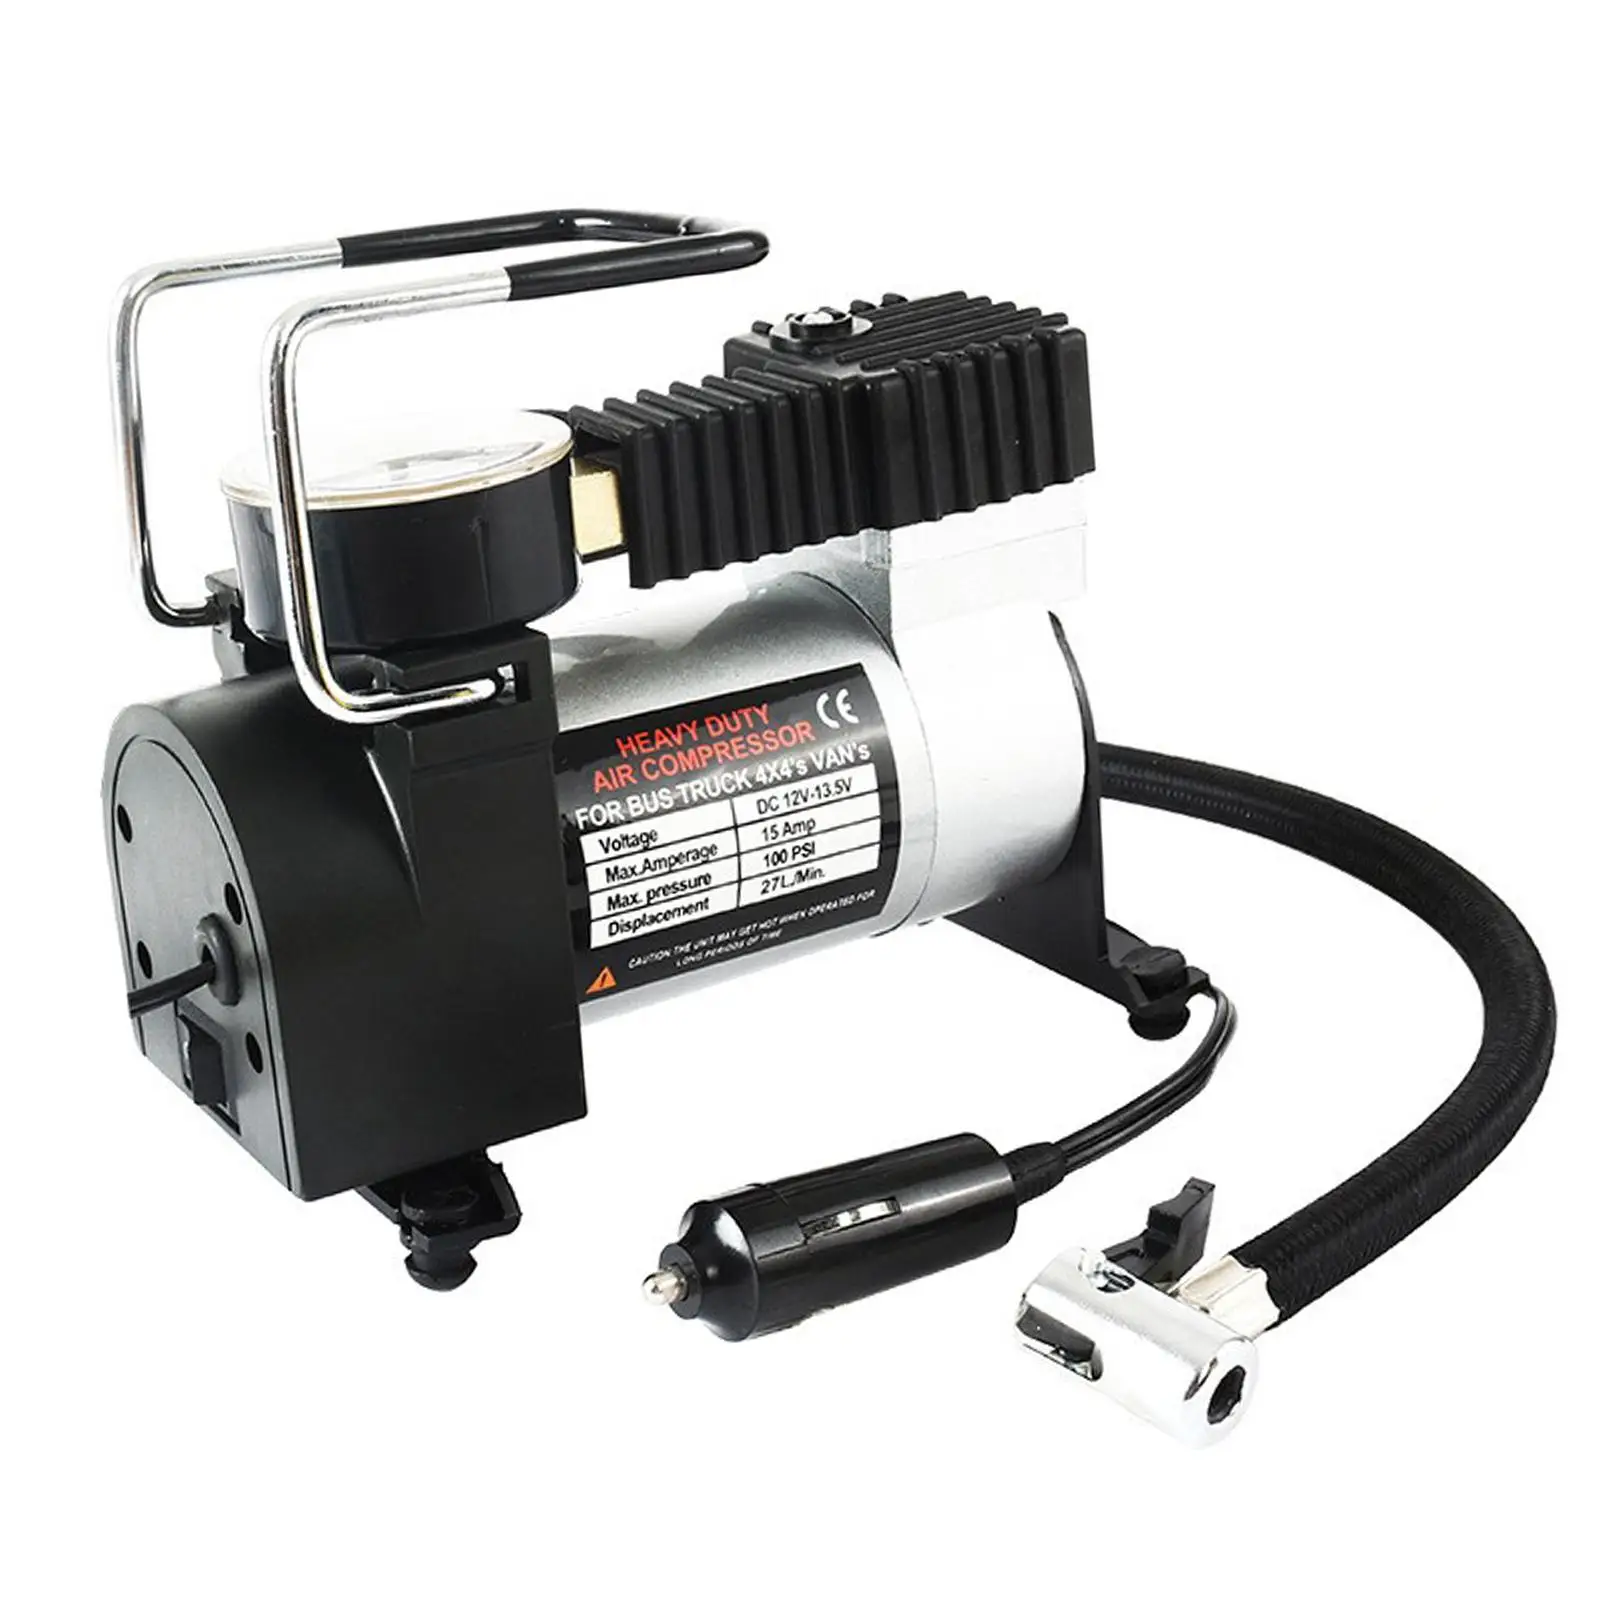 Portable Car Electric Air Pump Inflator Deflator, 12V Mini Compact Compressor